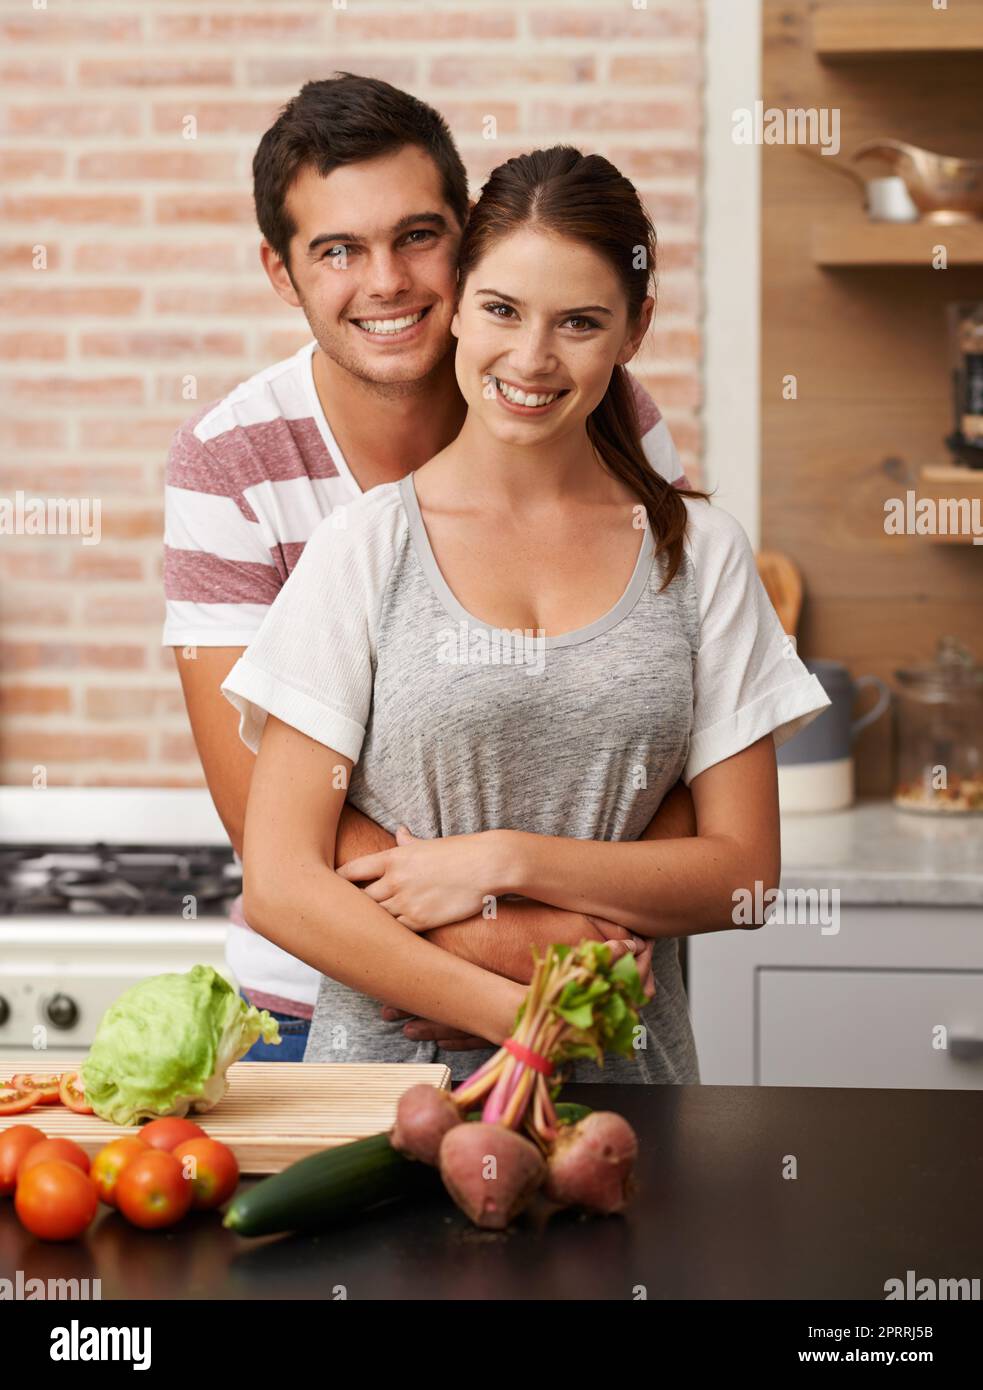 Kochen mit Liebe. Porträt eines attraktiven jungen Paares, das sich in der Küche verklebt. Stockfoto